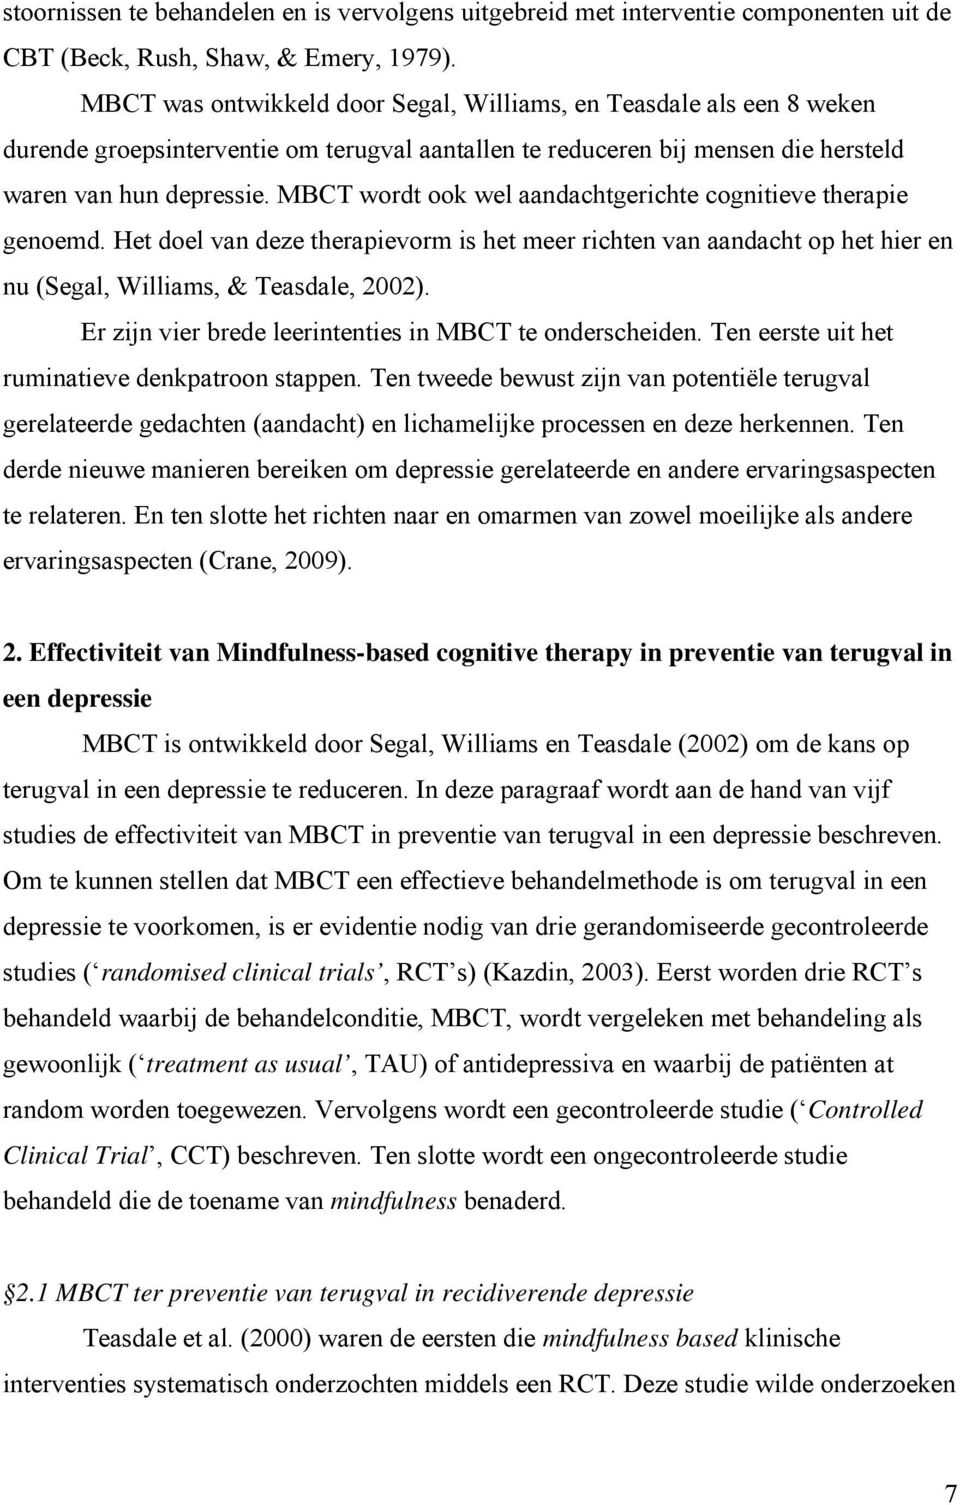 MBCT wordt ook wel aandachtgerichte cognitieve therapie genoemd. Het doel van deze therapievorm is het meer richten van aandacht op het hier en nu (Segal, Williams, & Teasdale, 2002).